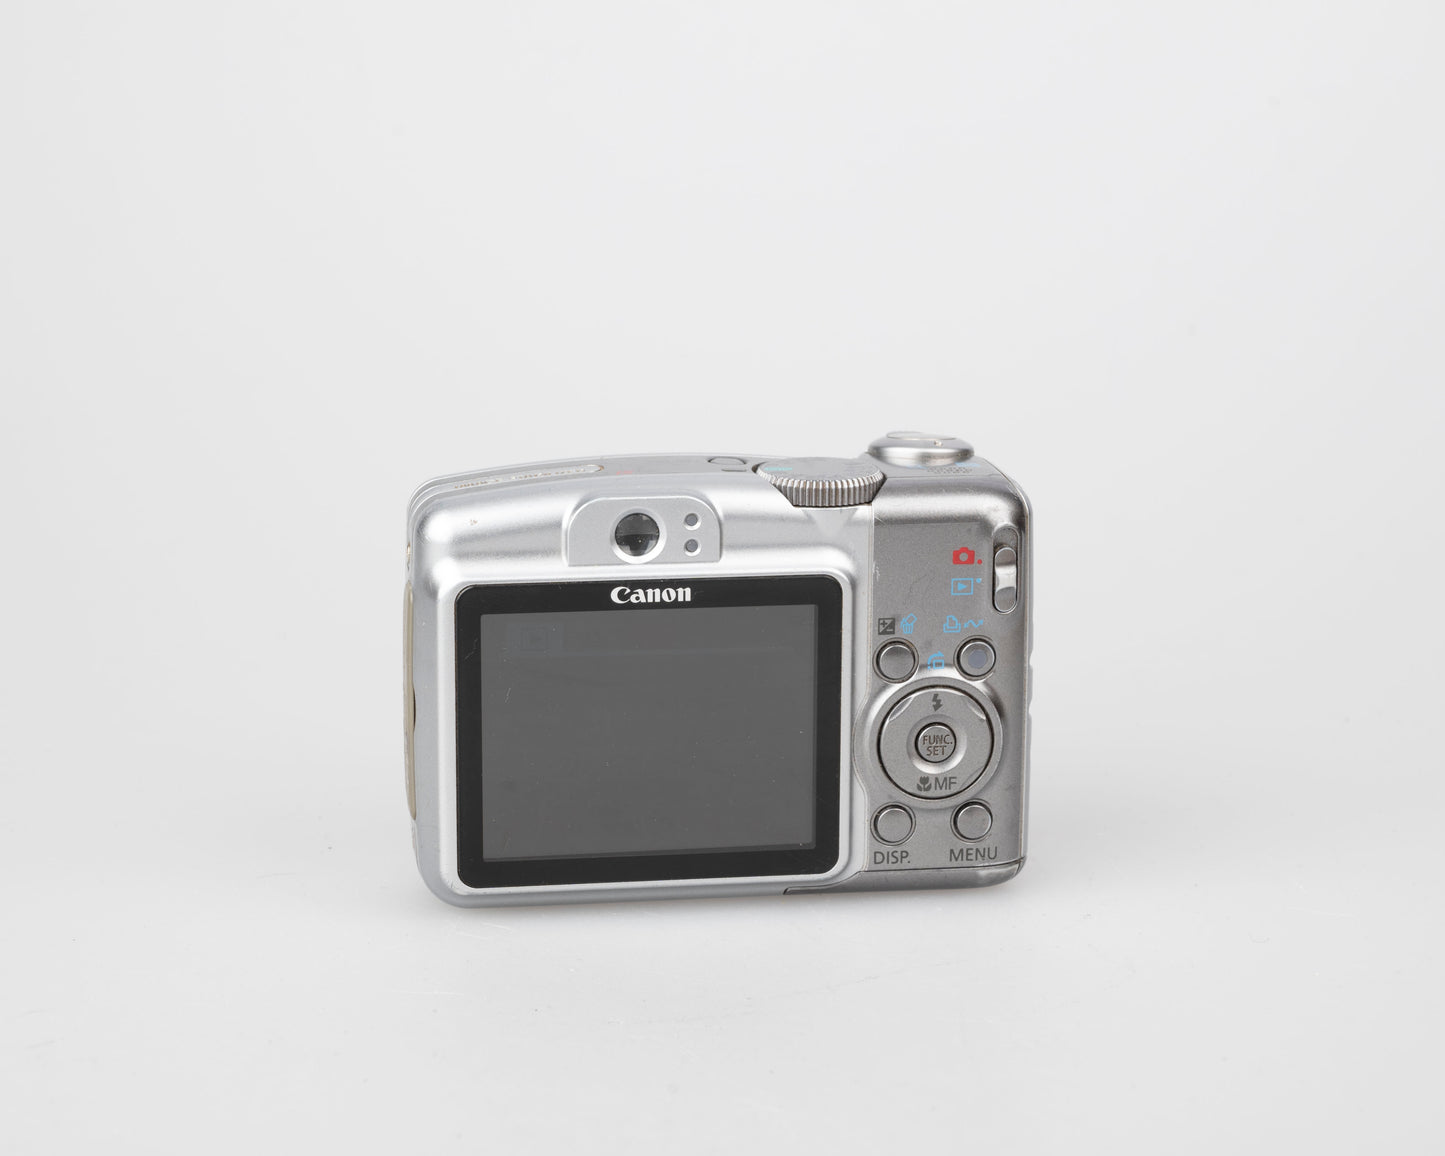 Appareil photo numérique Canon Powershot A720 IS avec capteur CCD 8 MP (utilise des piles AA et des cartes mémoire SD)